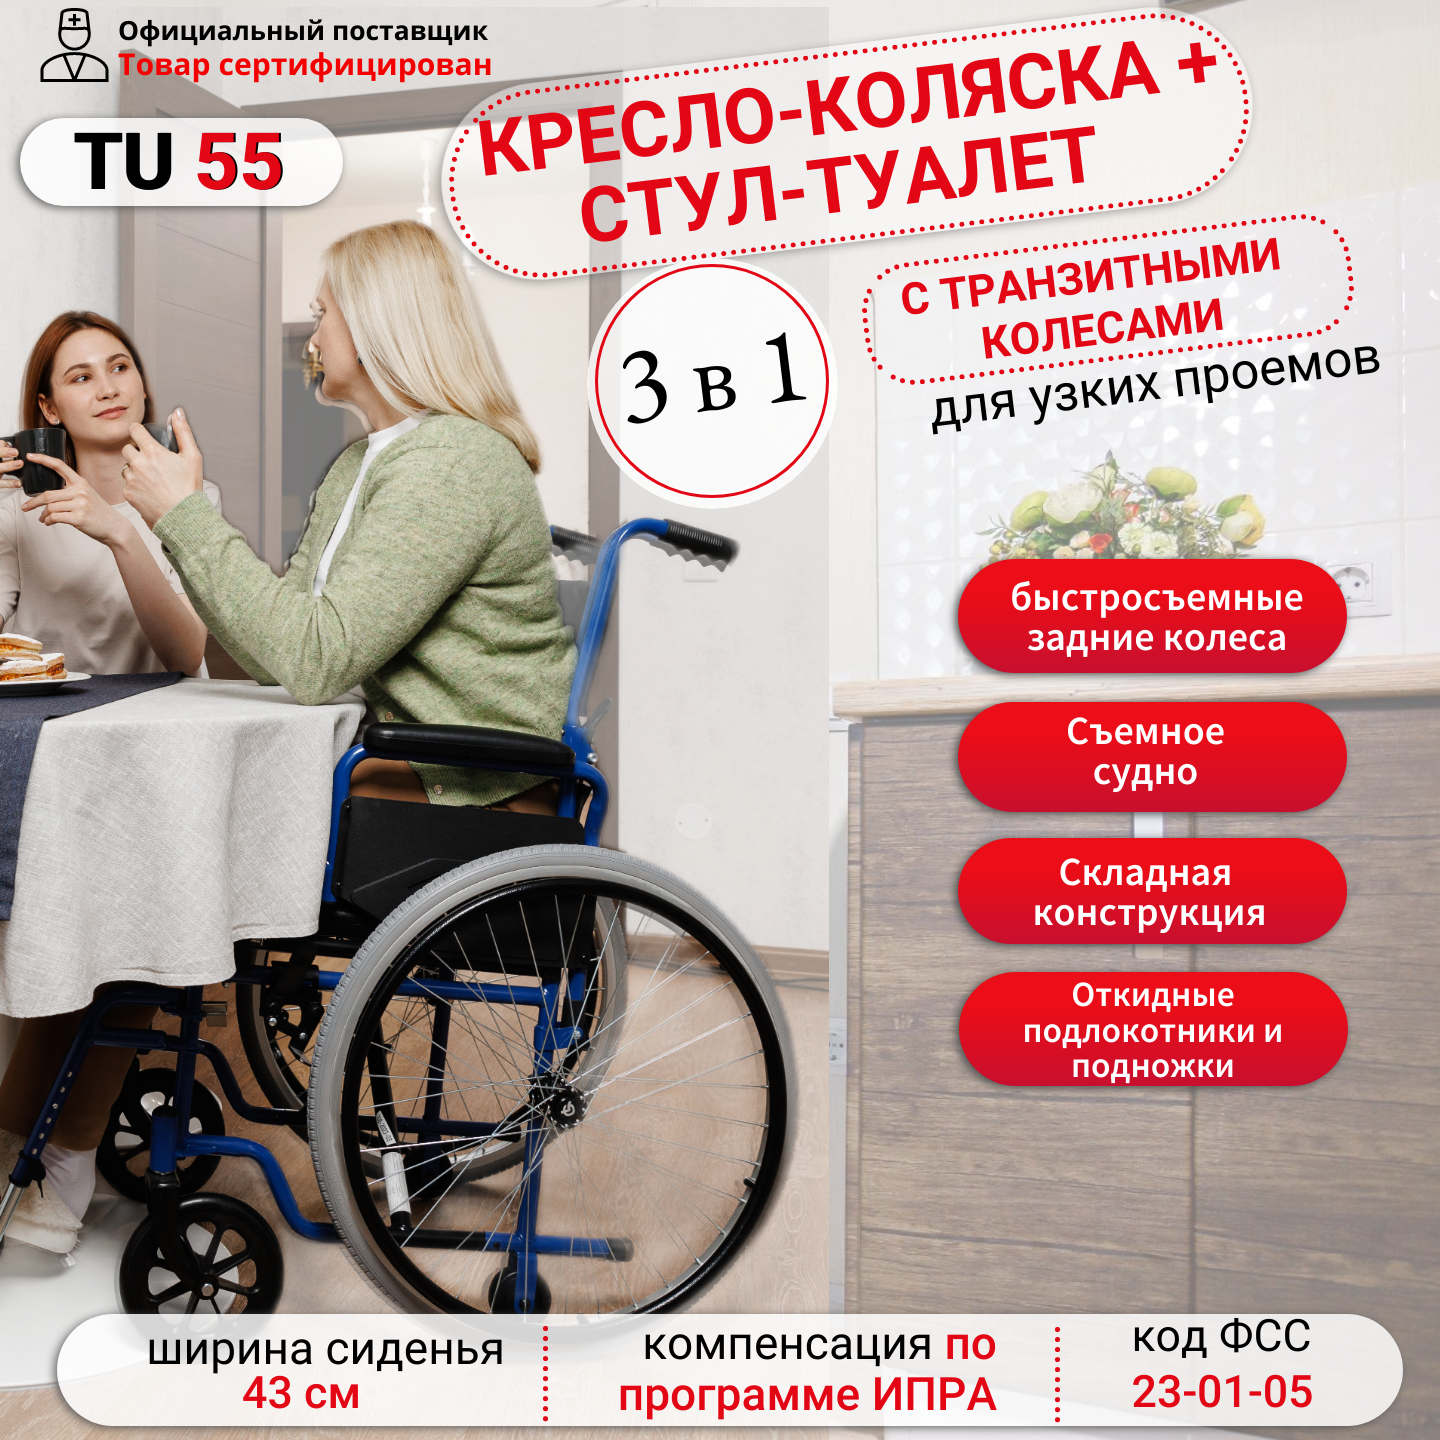 Кресло-коляска складное Ortonica TU 55 туалет для инвалидов и пожилых людей со съемным санитарным оснащением ширина сиденья 43 см Код ФСС 23-01-05